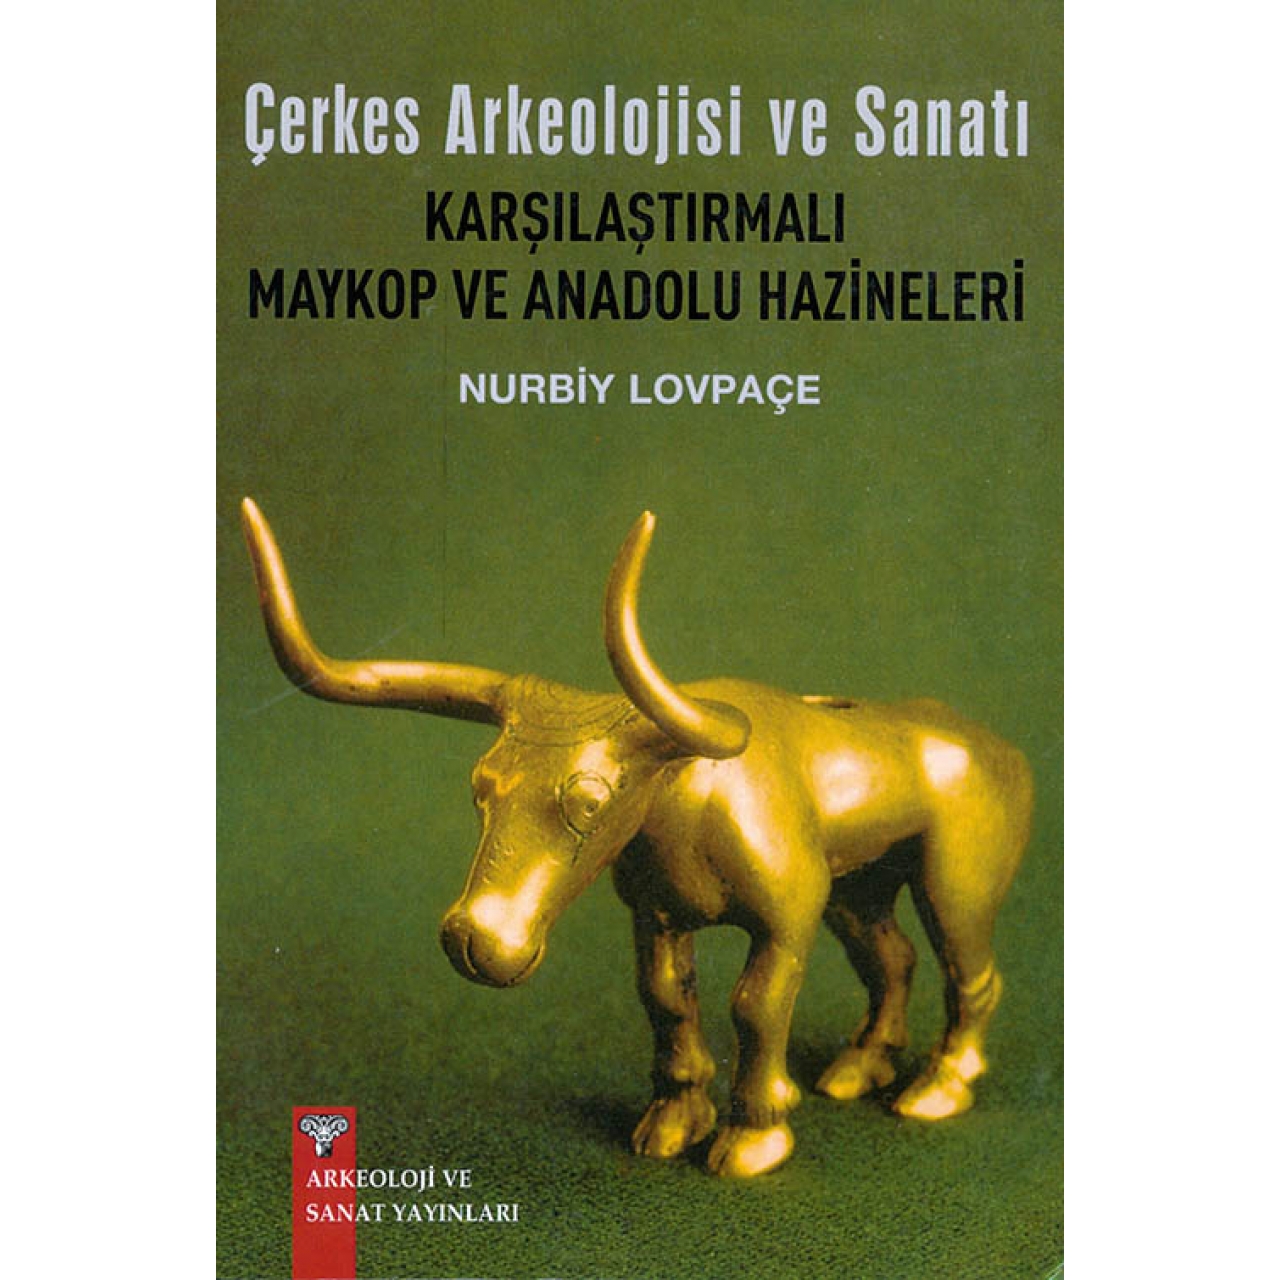 Çerkes Arkeolojisi ve Sanatı Karşılaştırmalı Maykop ve Anadolu Hazineleri